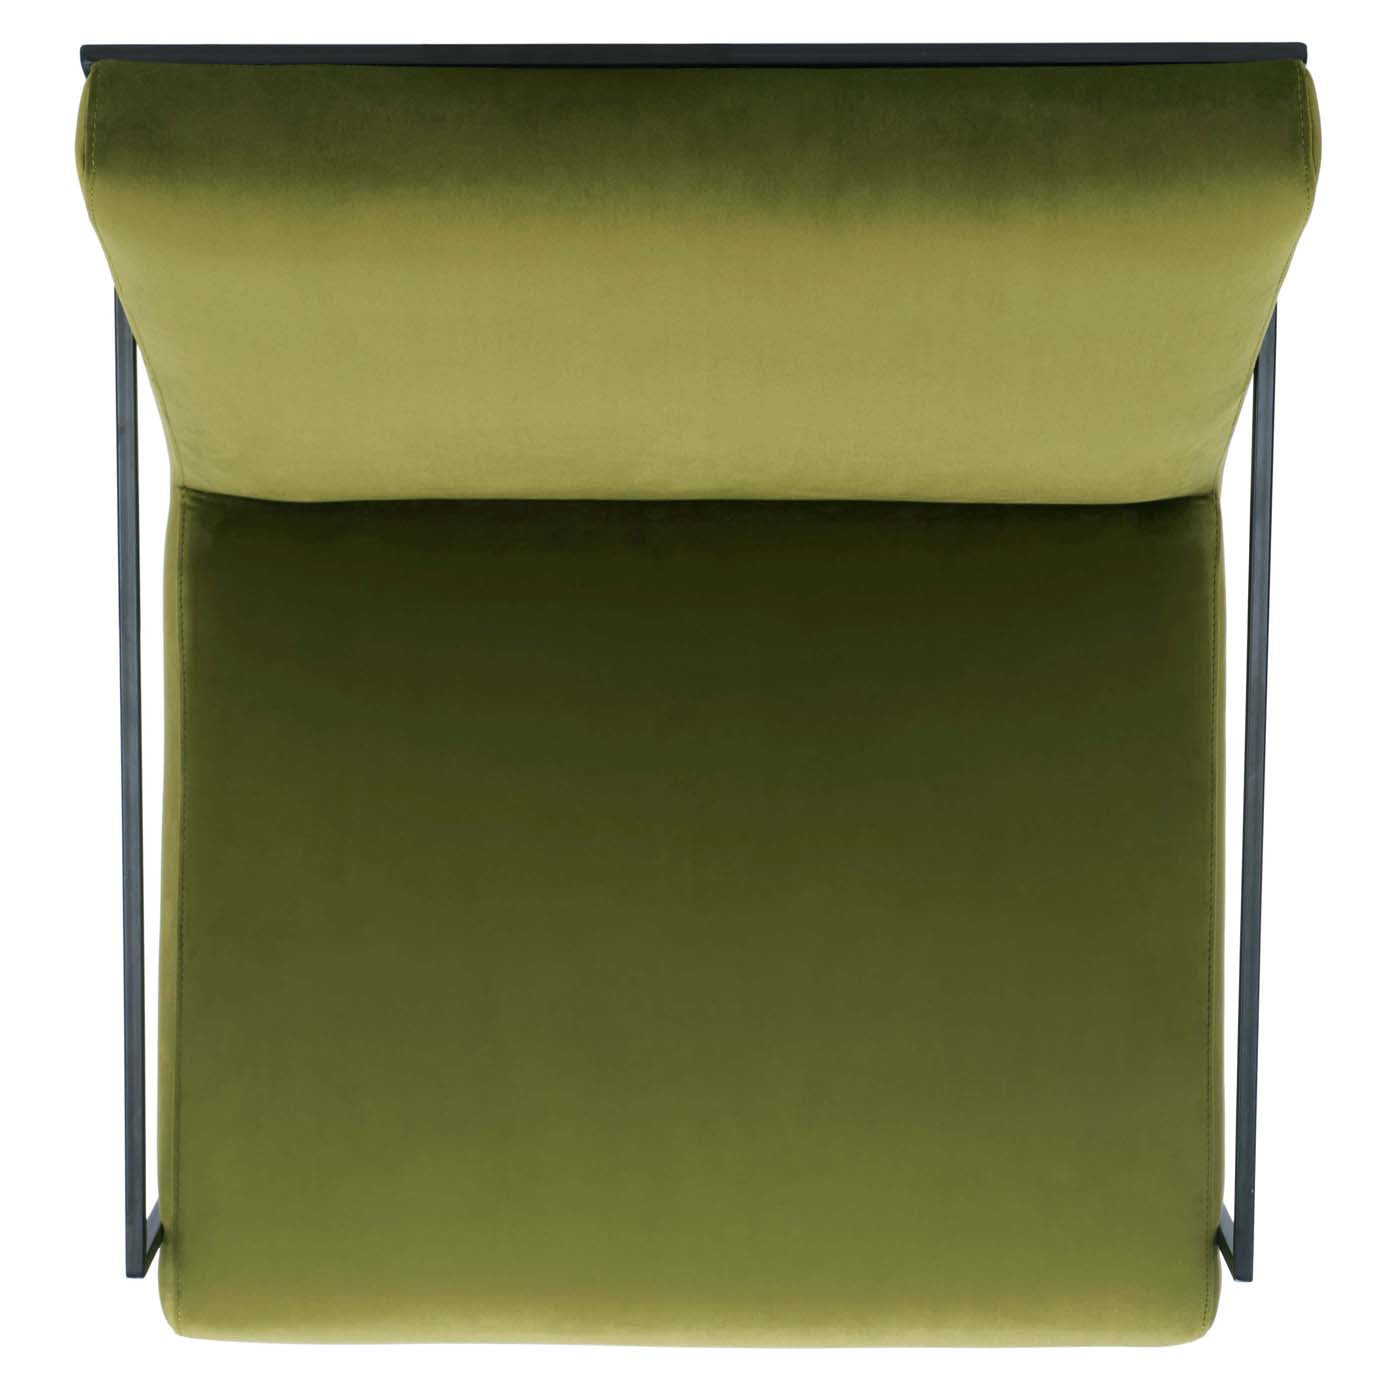 Safavieh Atheris Arm Chair , ACH5200 - Green / Black